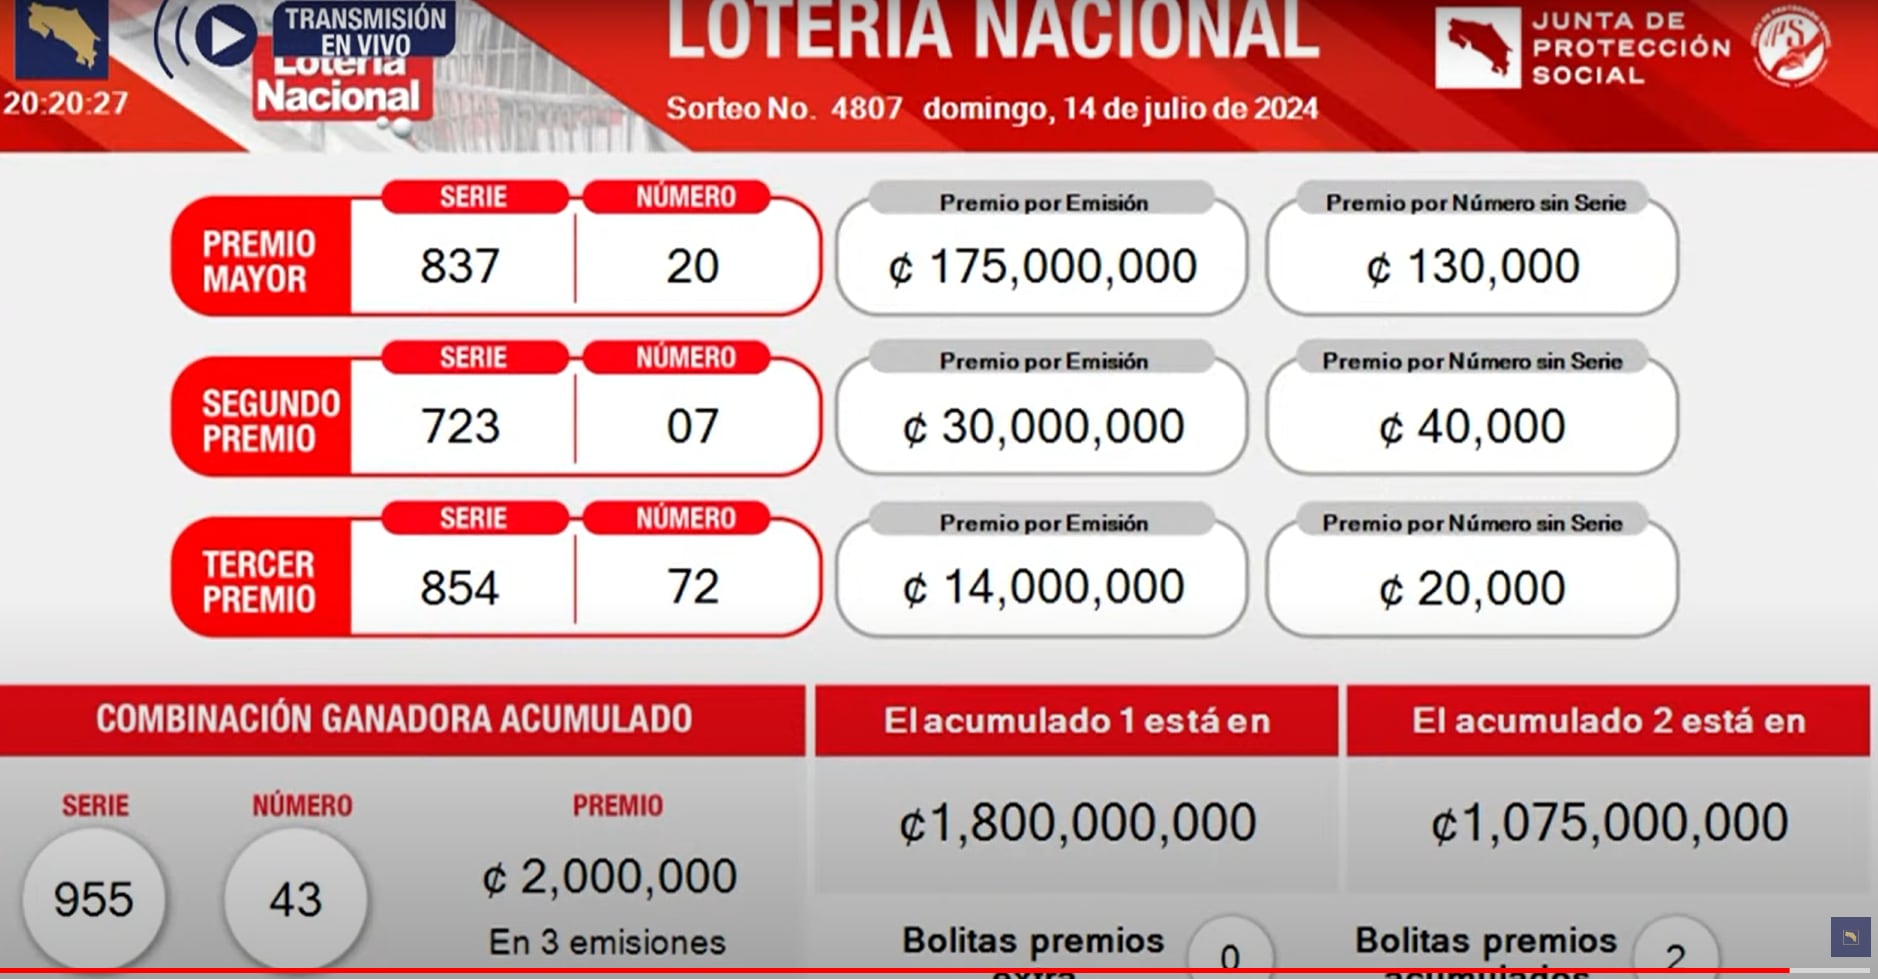 Estos son los resultados de la lotería de este domingo.

Imagen: Captura de pantalla